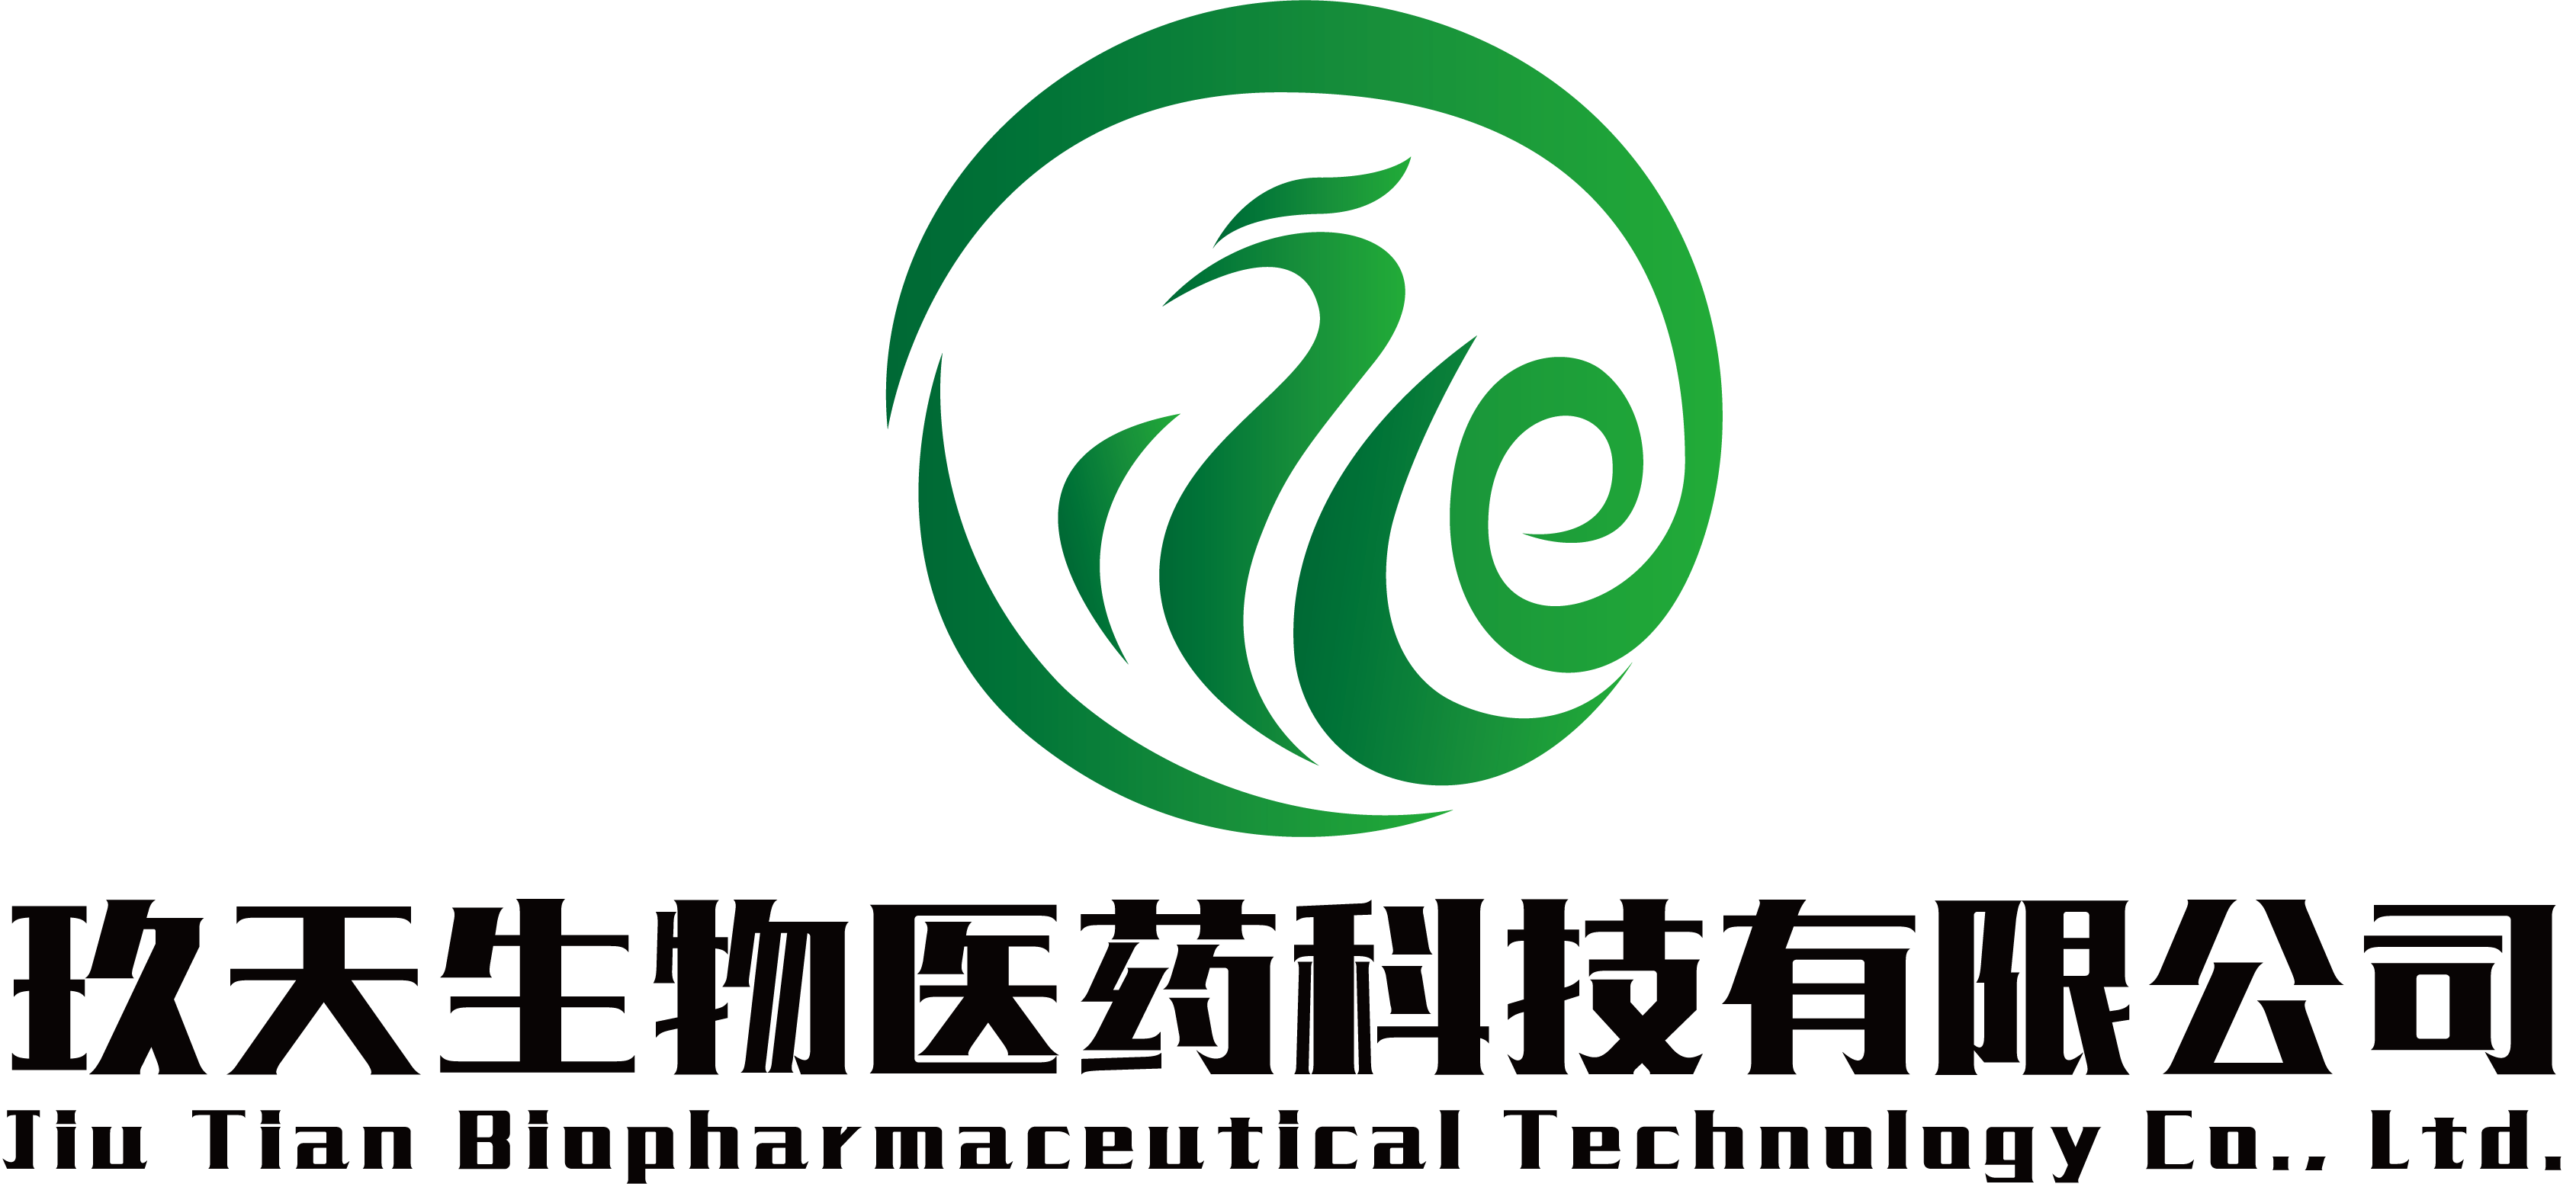 湖北玖天生物医药科技有限公司logo